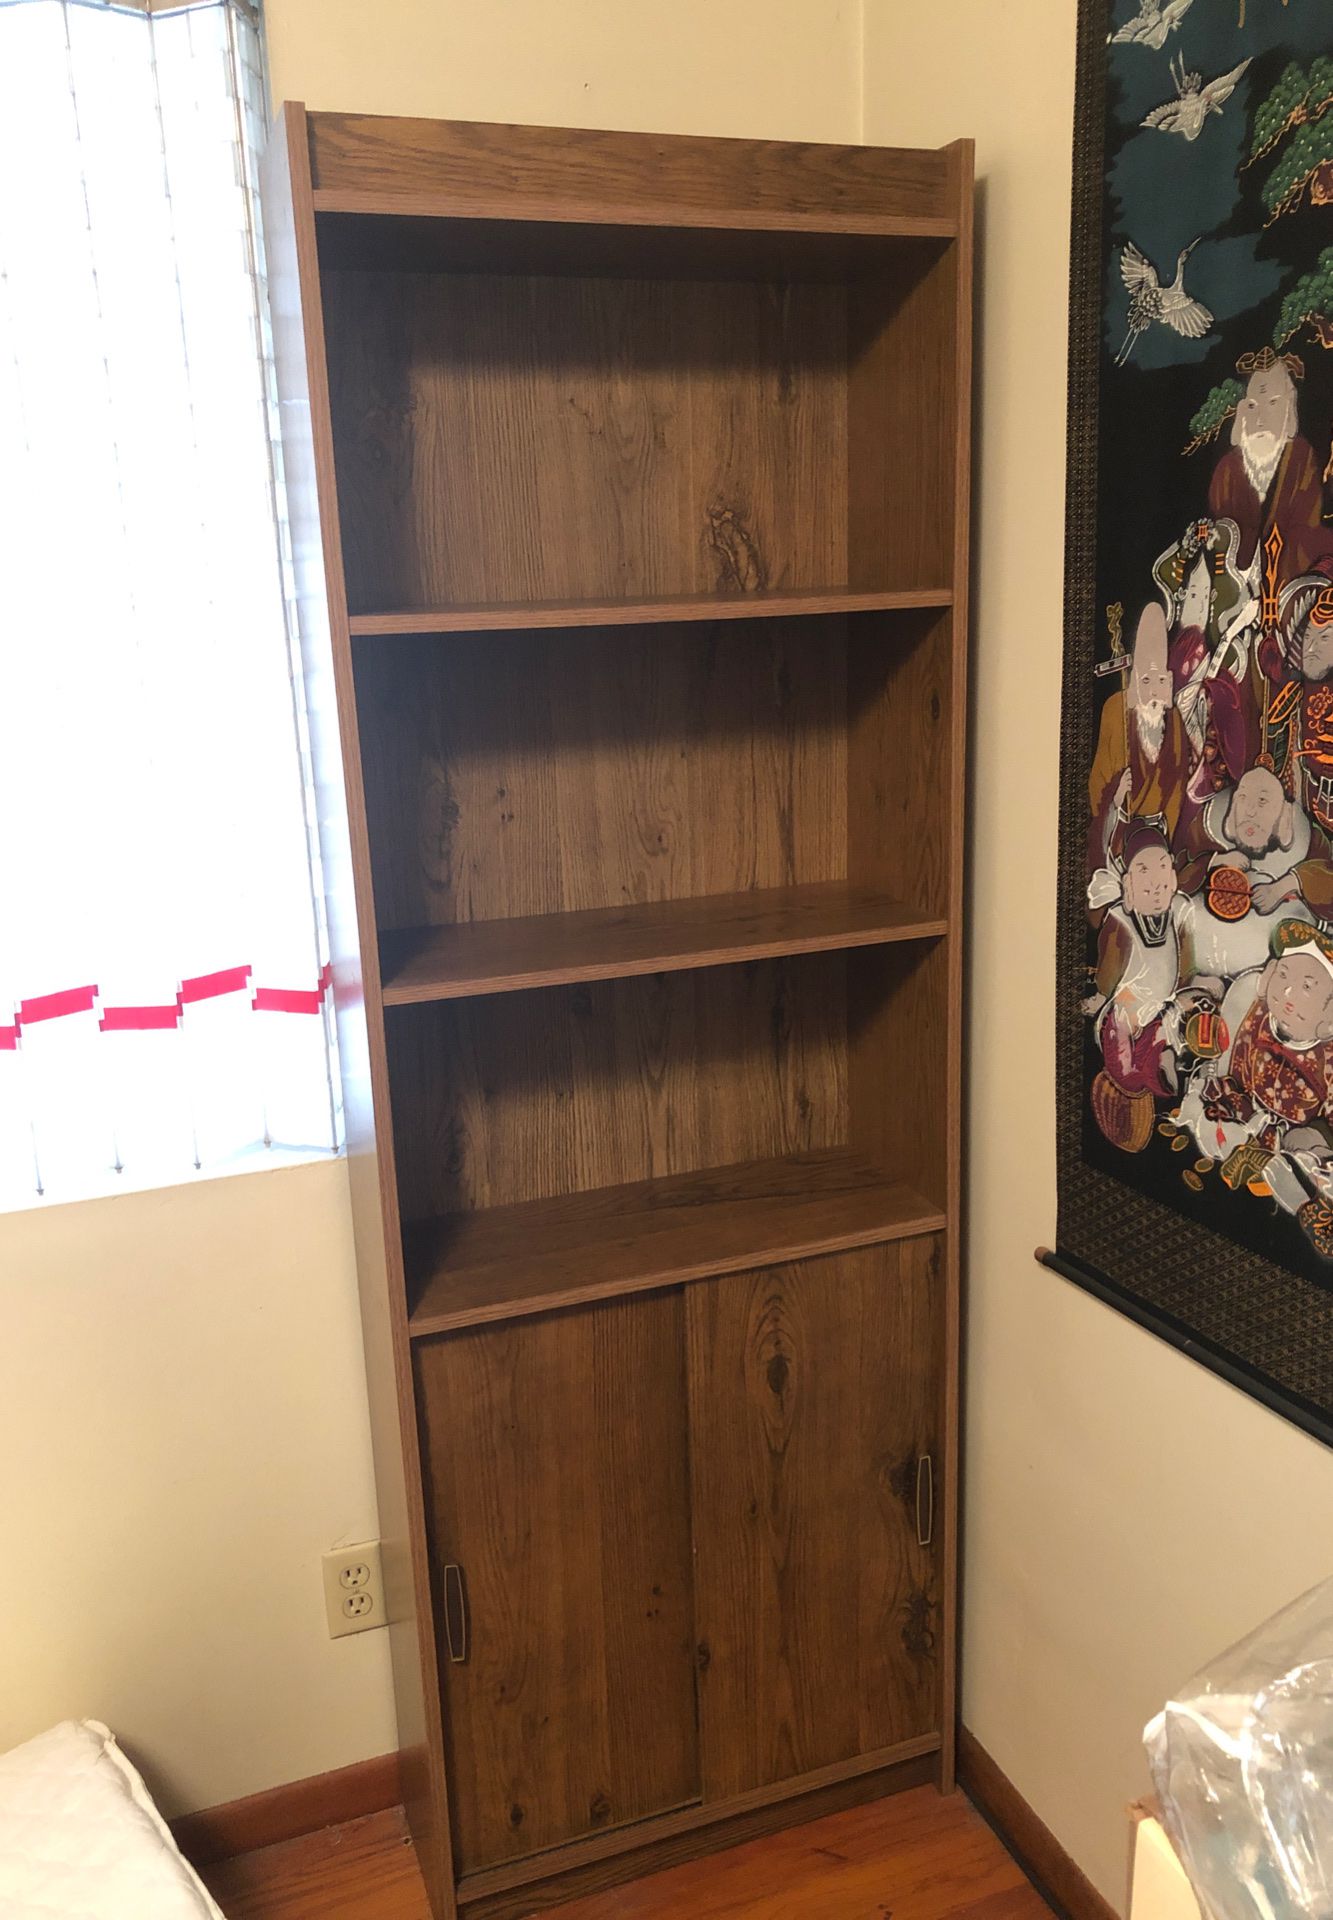 Two bookshelves/cabinet